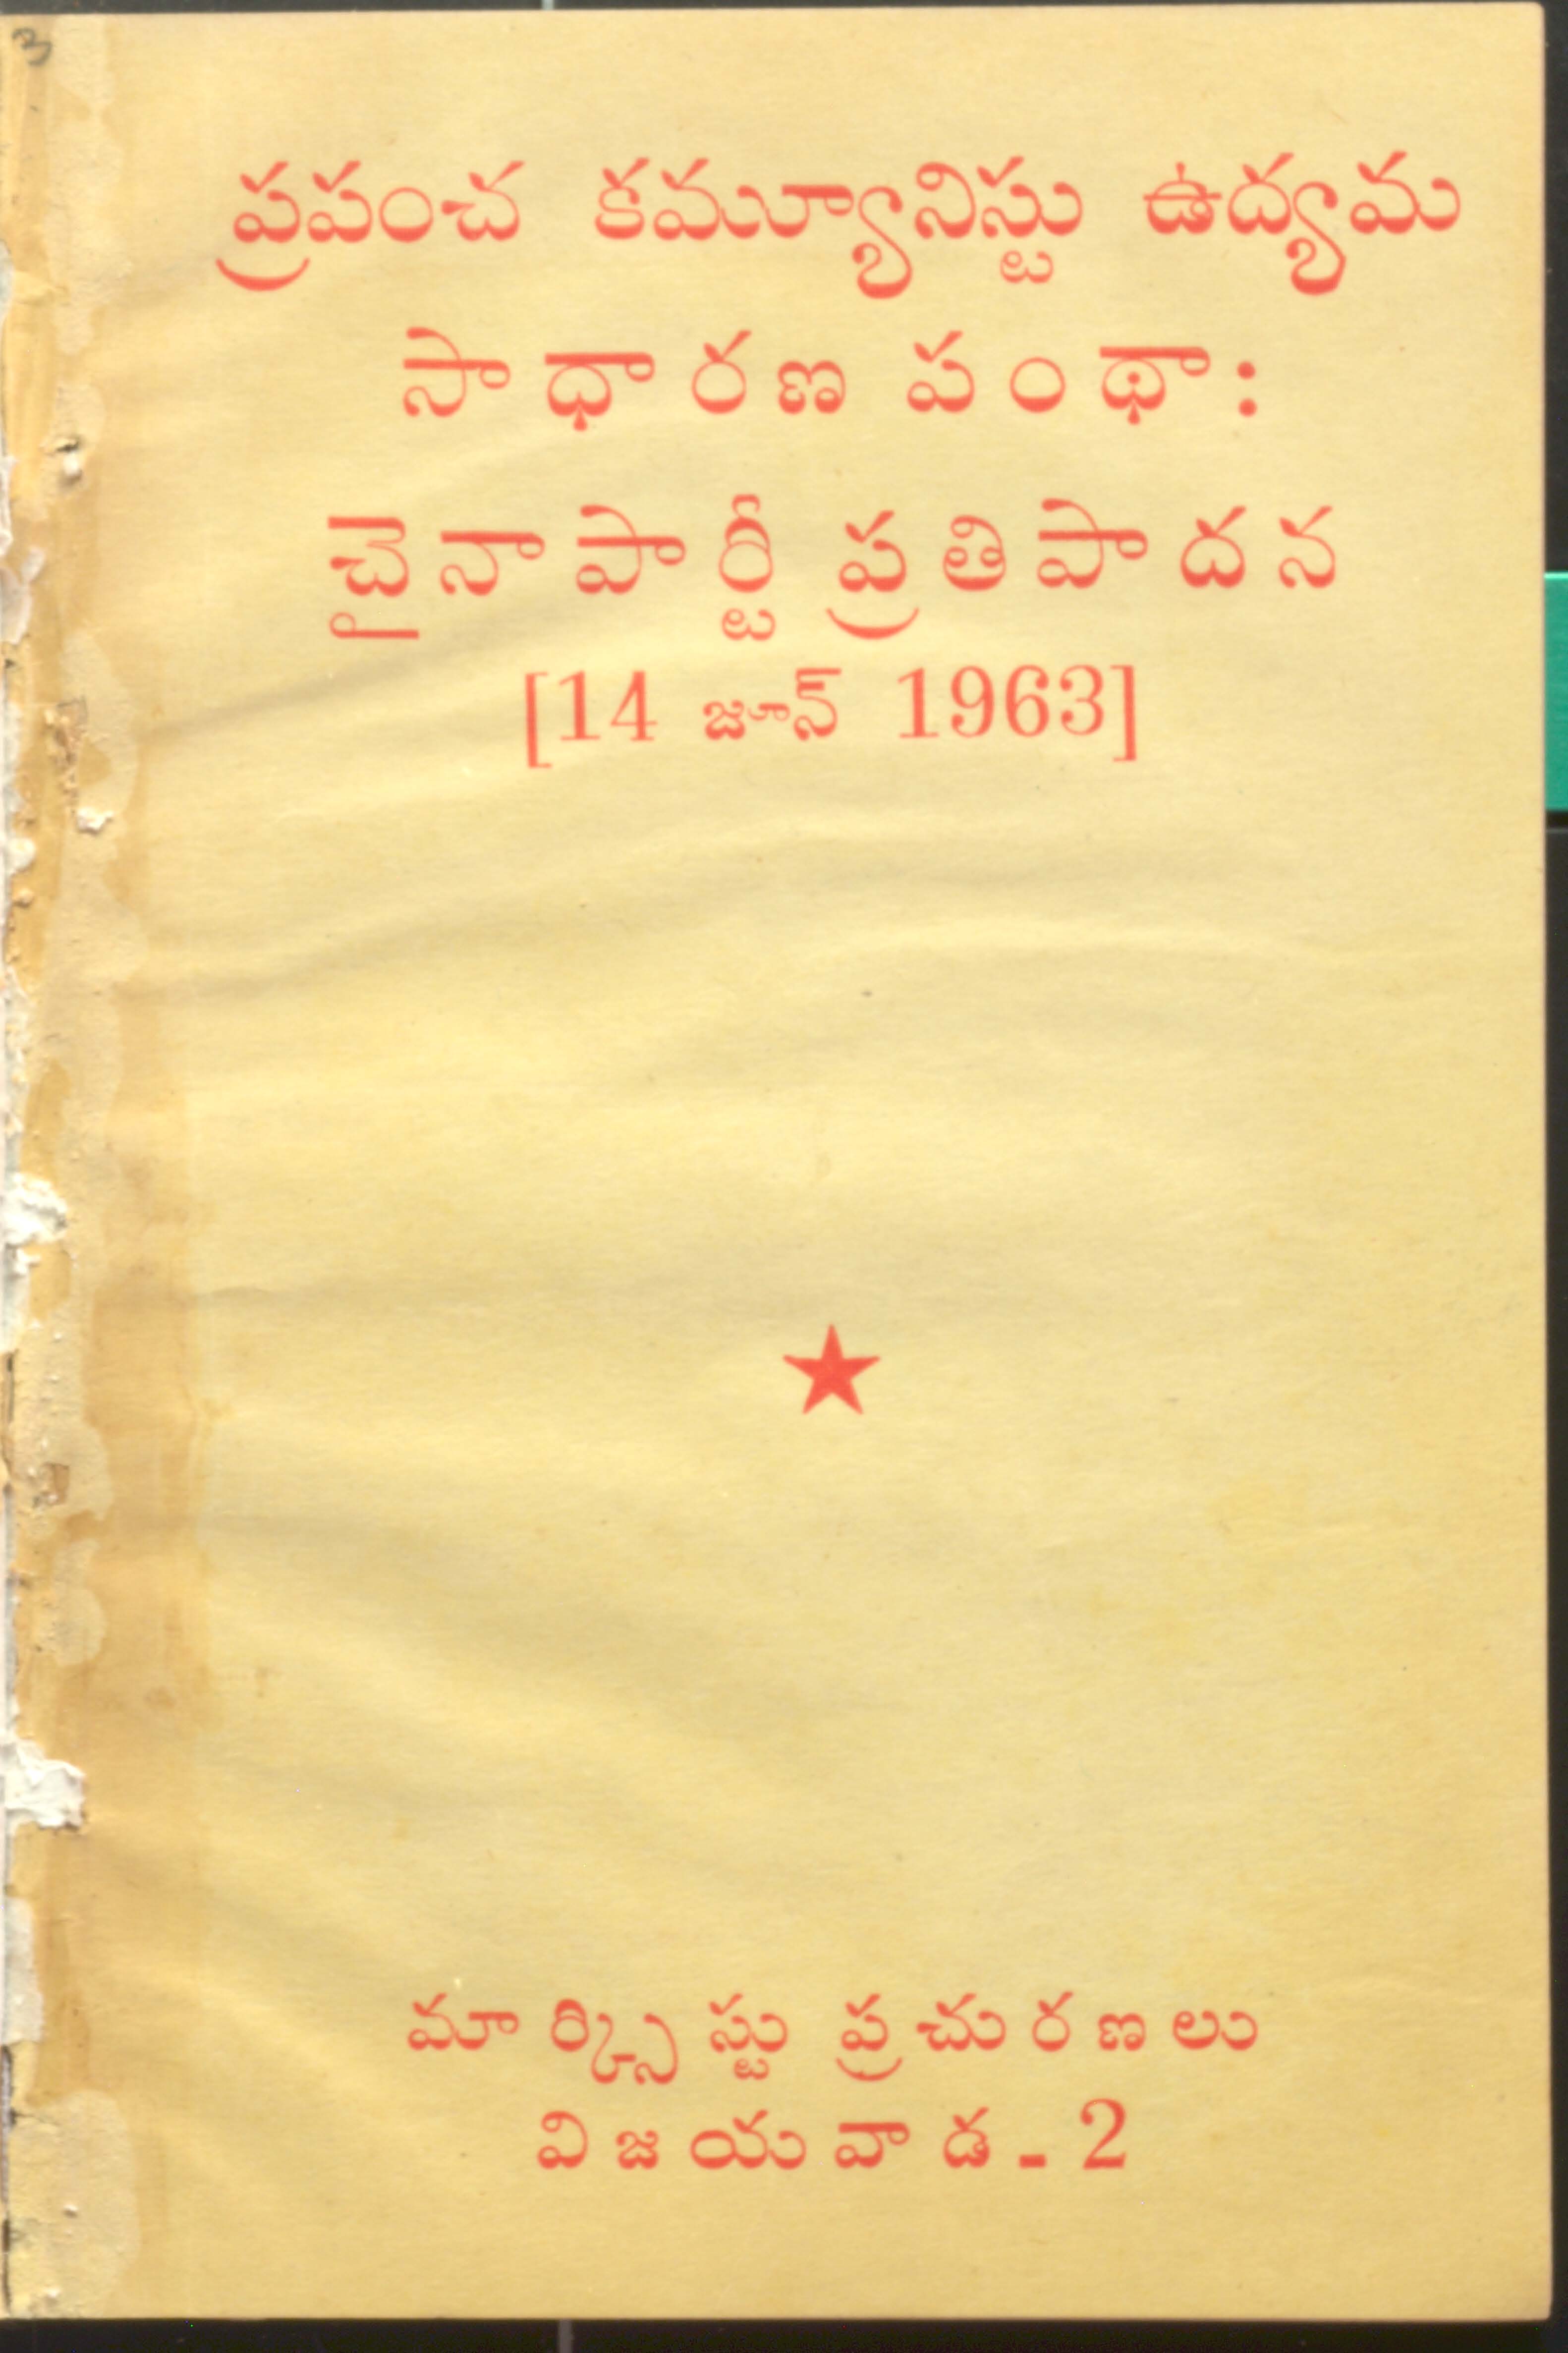 ప్రపంచ కమ్యూనిస్టు ఉద్యమ సాధారణ పంధా చైనాపార్టీ ప్రతిపాదన (14 జూన్ 1963)